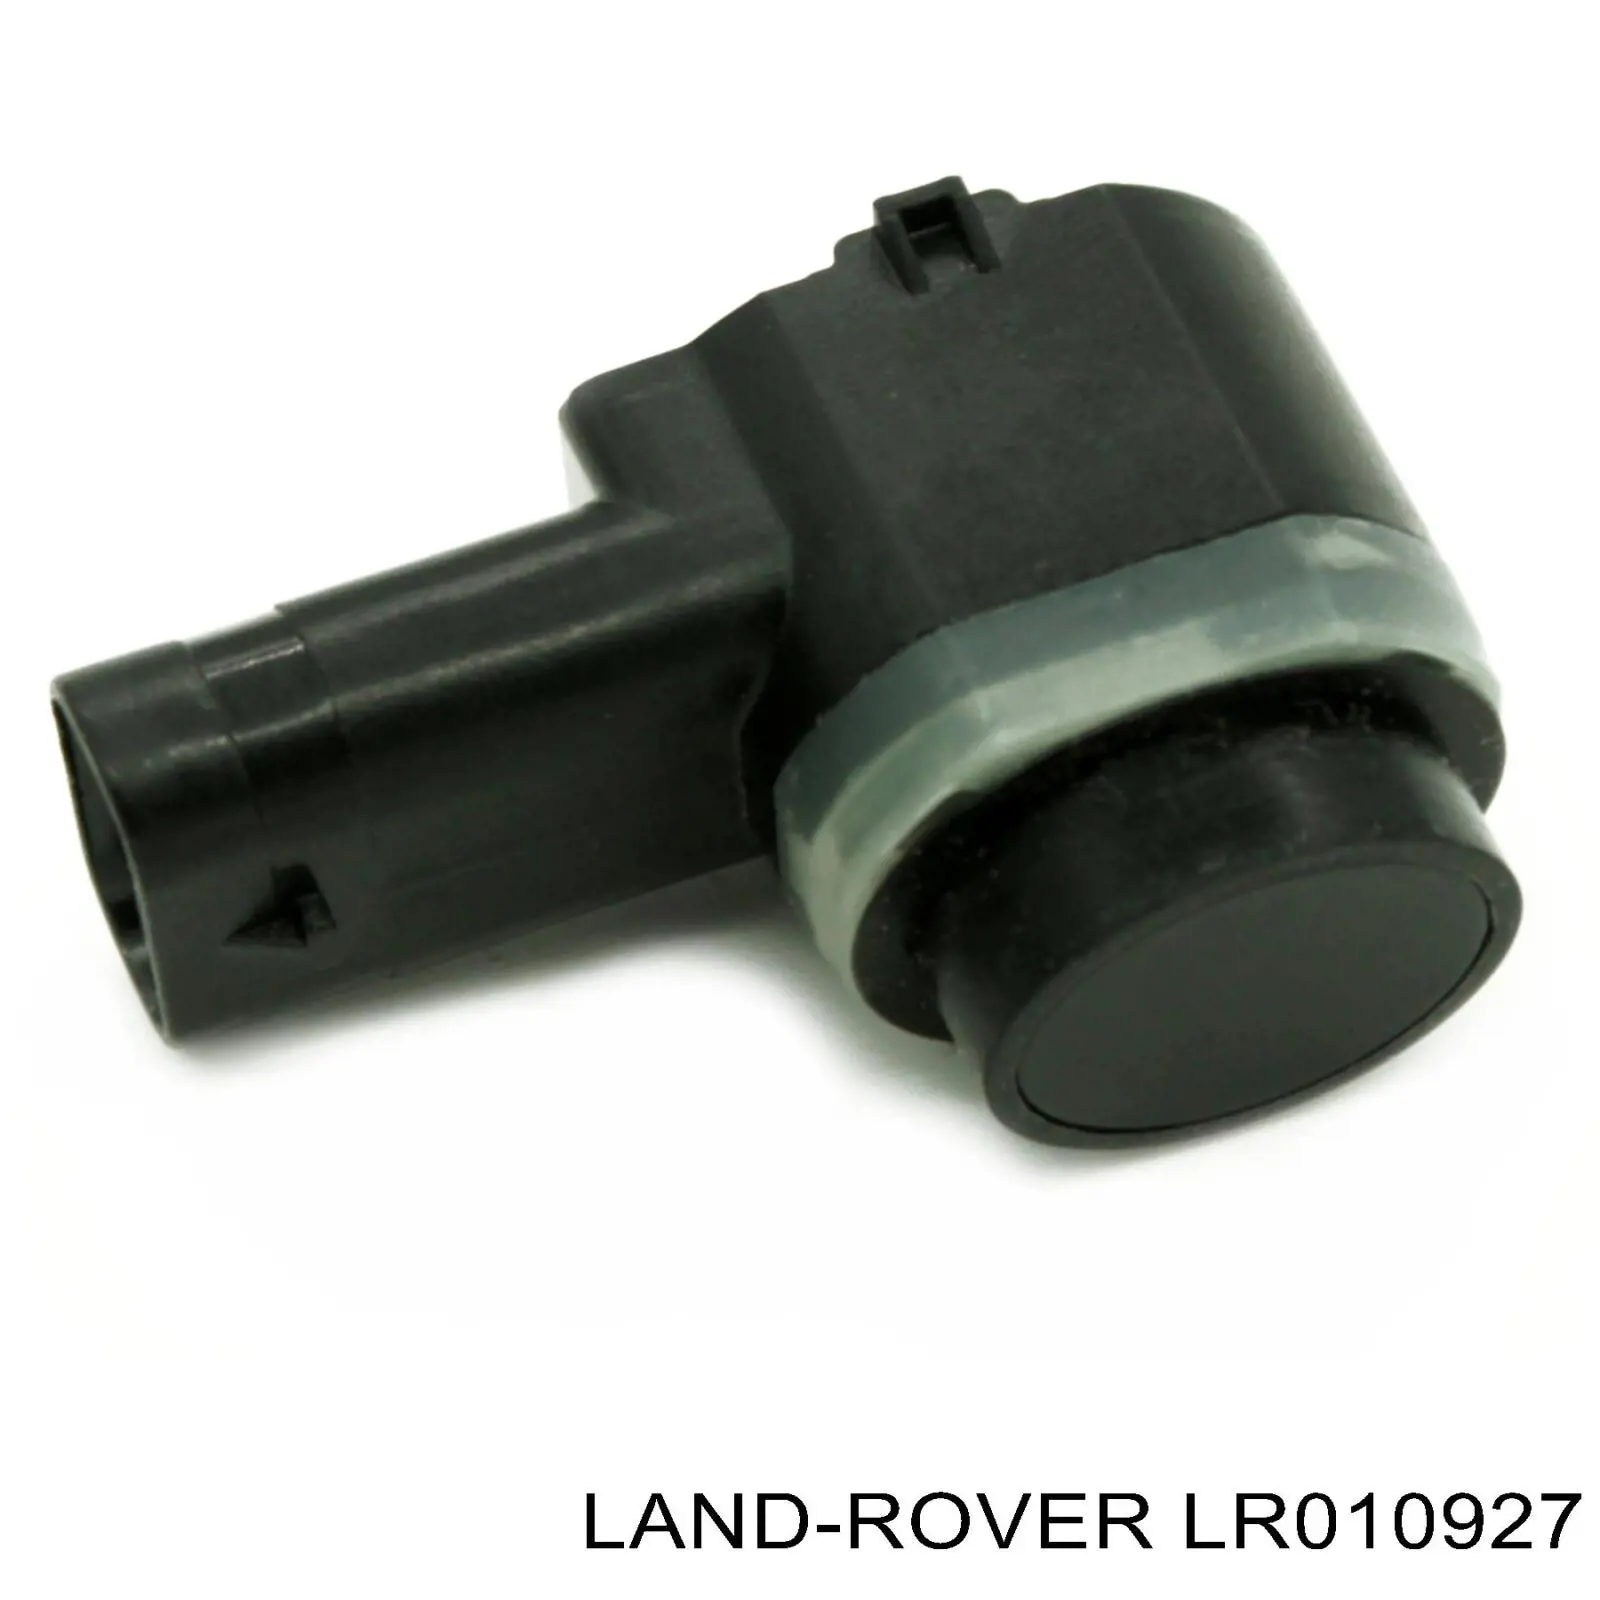 LR010927 Land Rover sensor de aparcamiento trasero